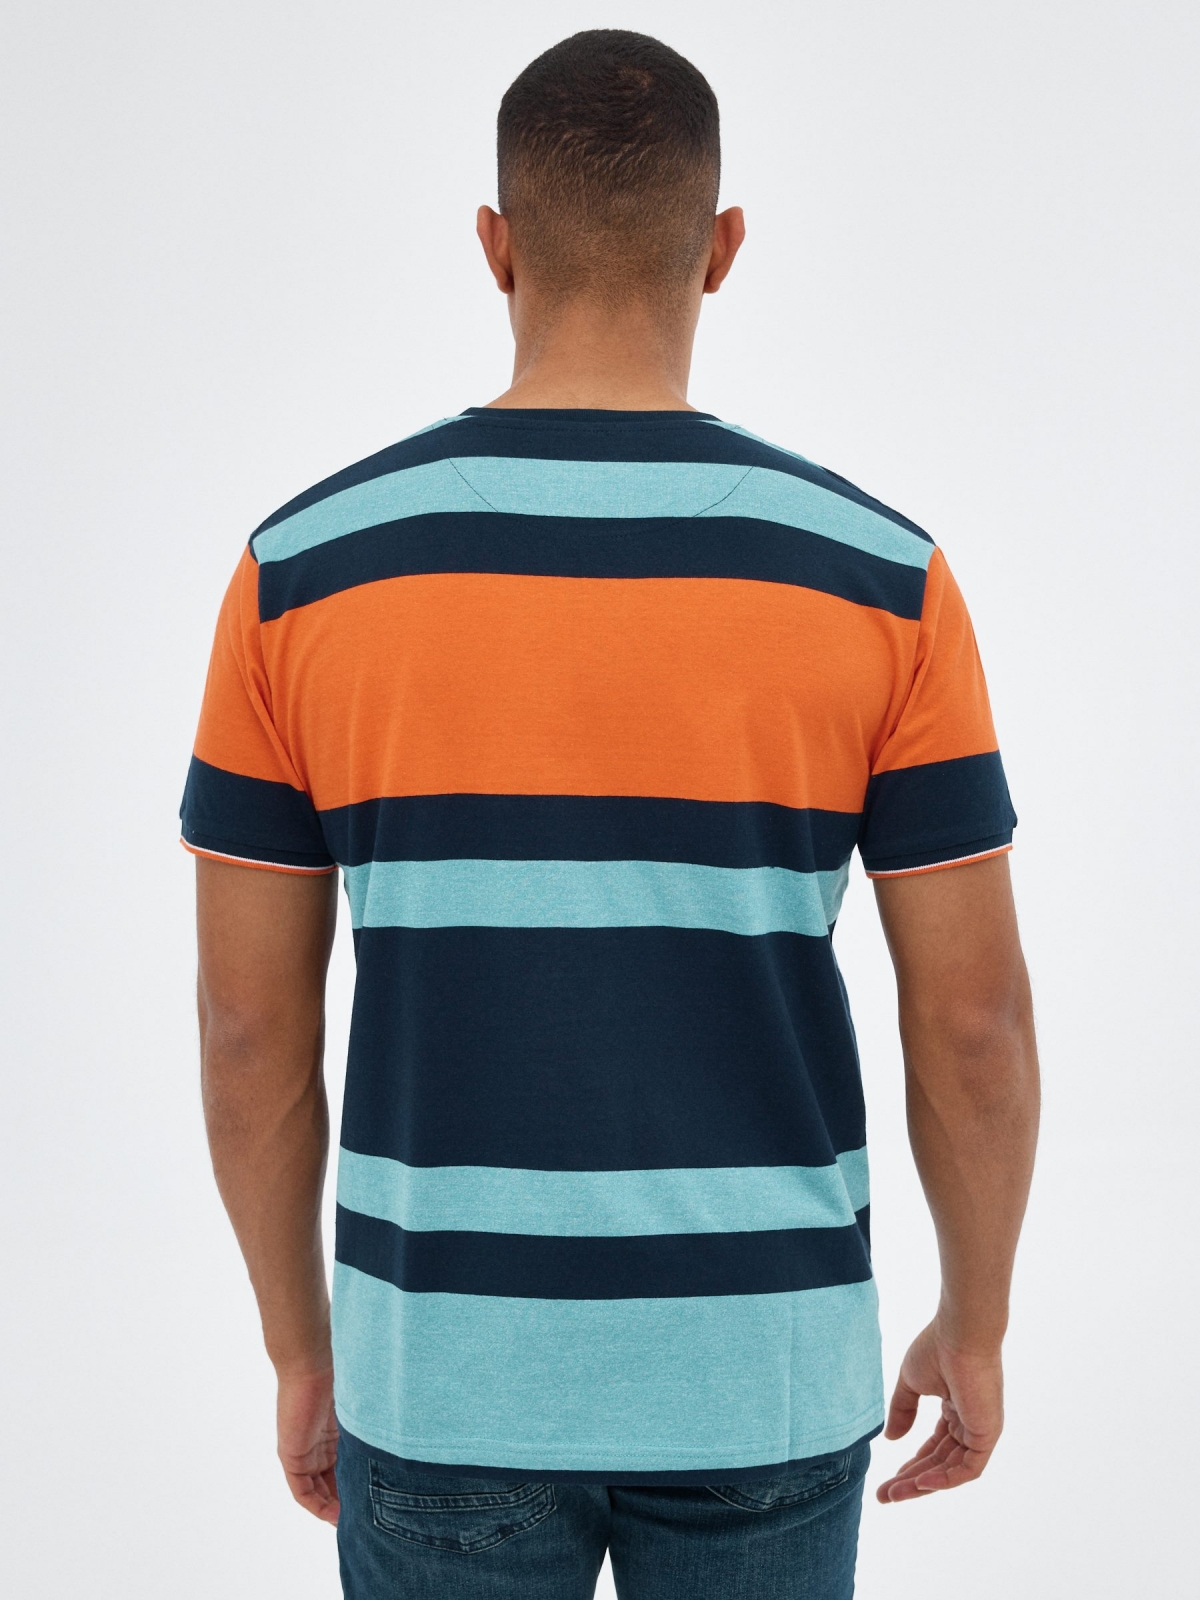 Camiseta rayas azul y naranja azul vista media trasera